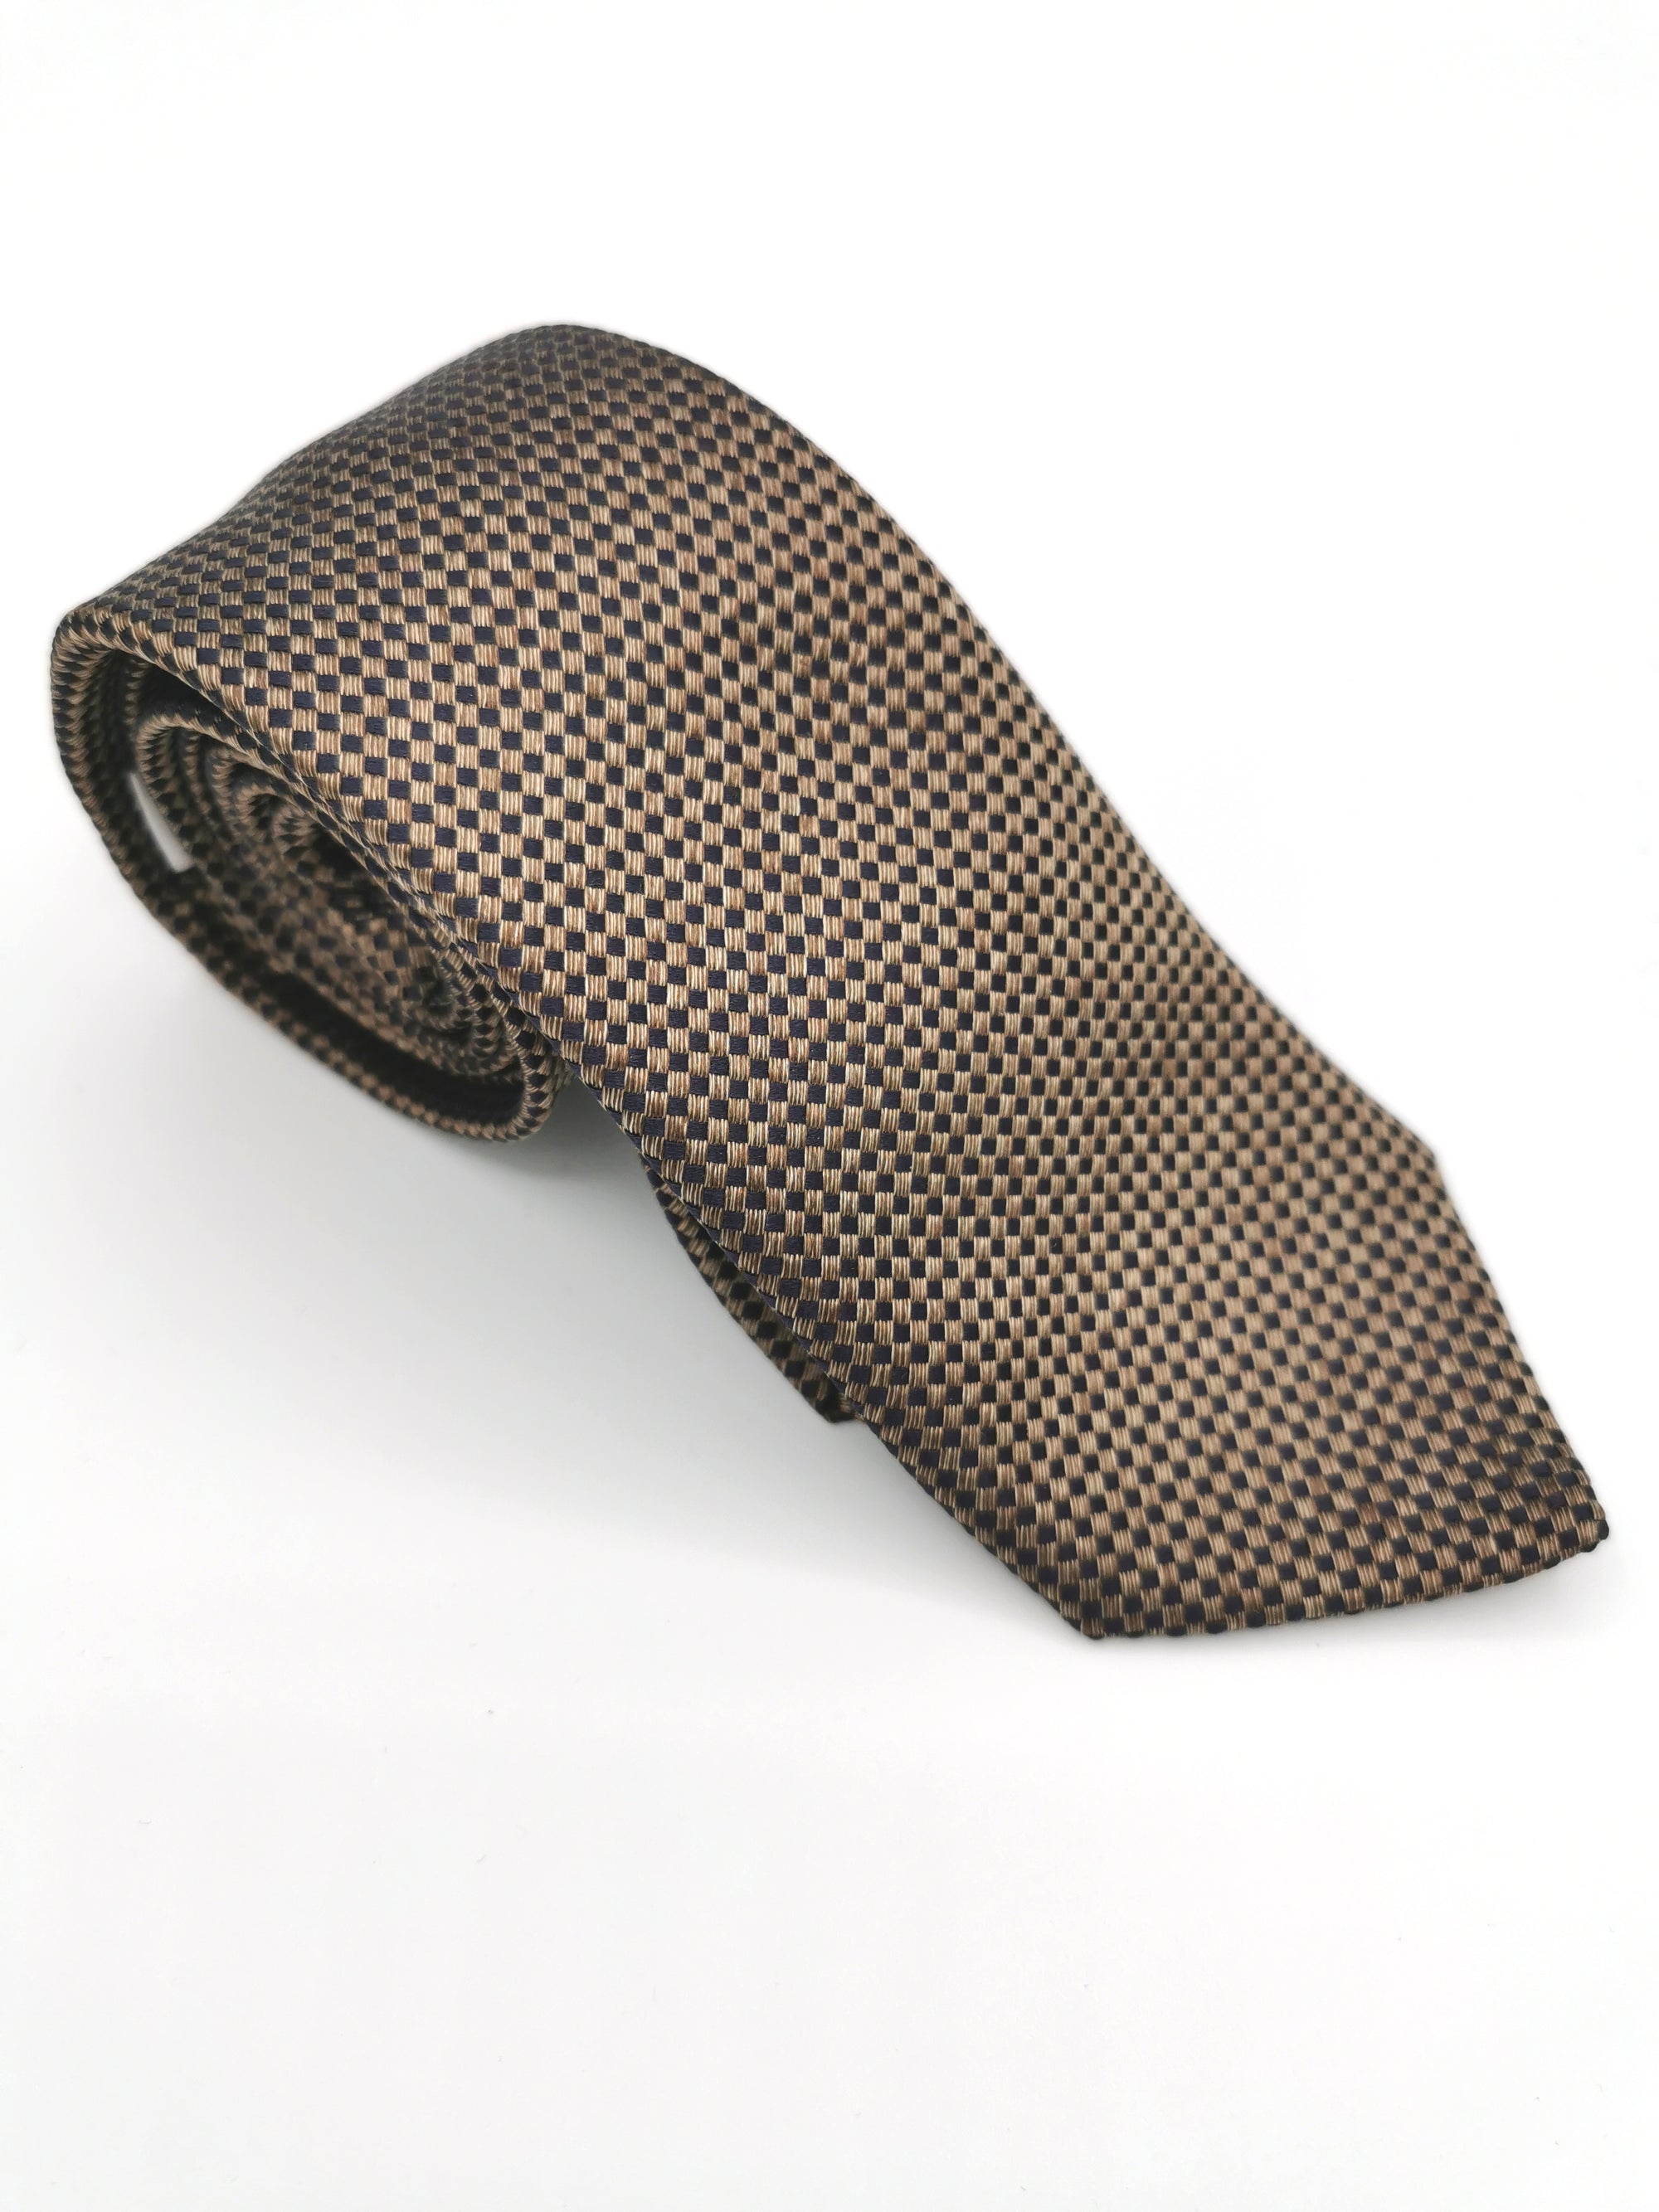 Ferala brown silk checkerboard tie